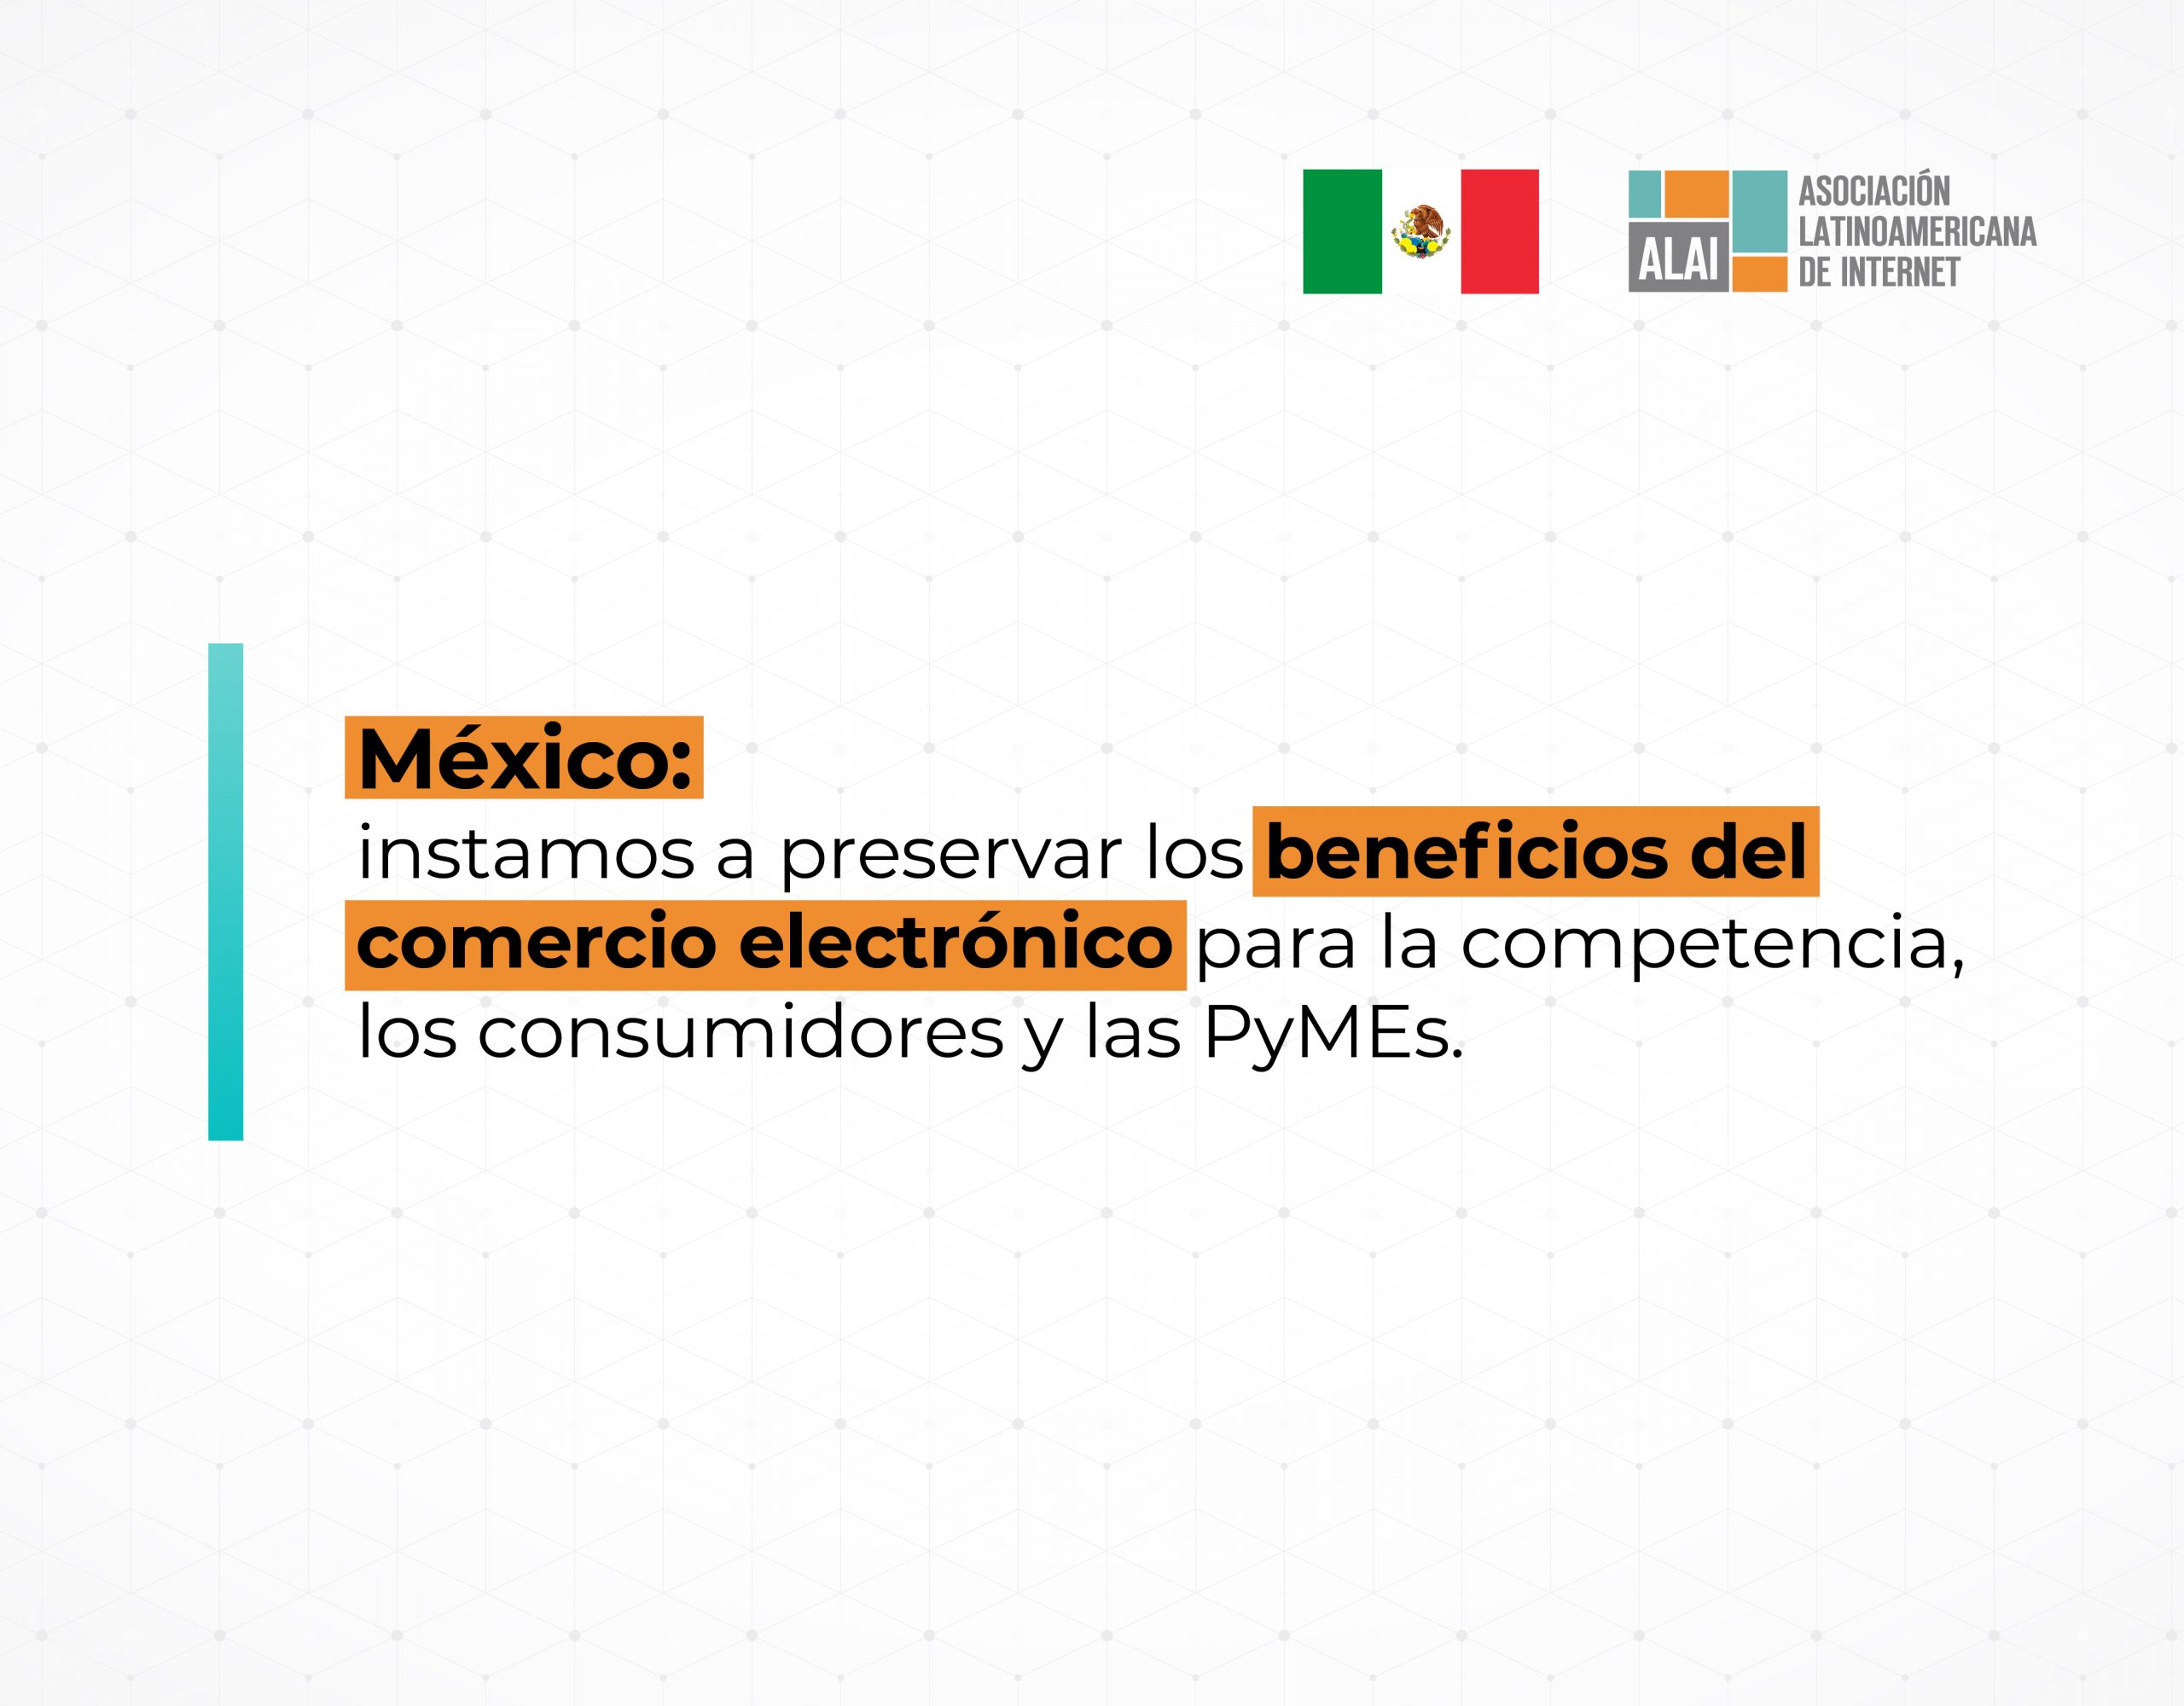 México: instamos a preservar los beneficios del comercio electrónico para la competencia, los consumidores y las PyMEs